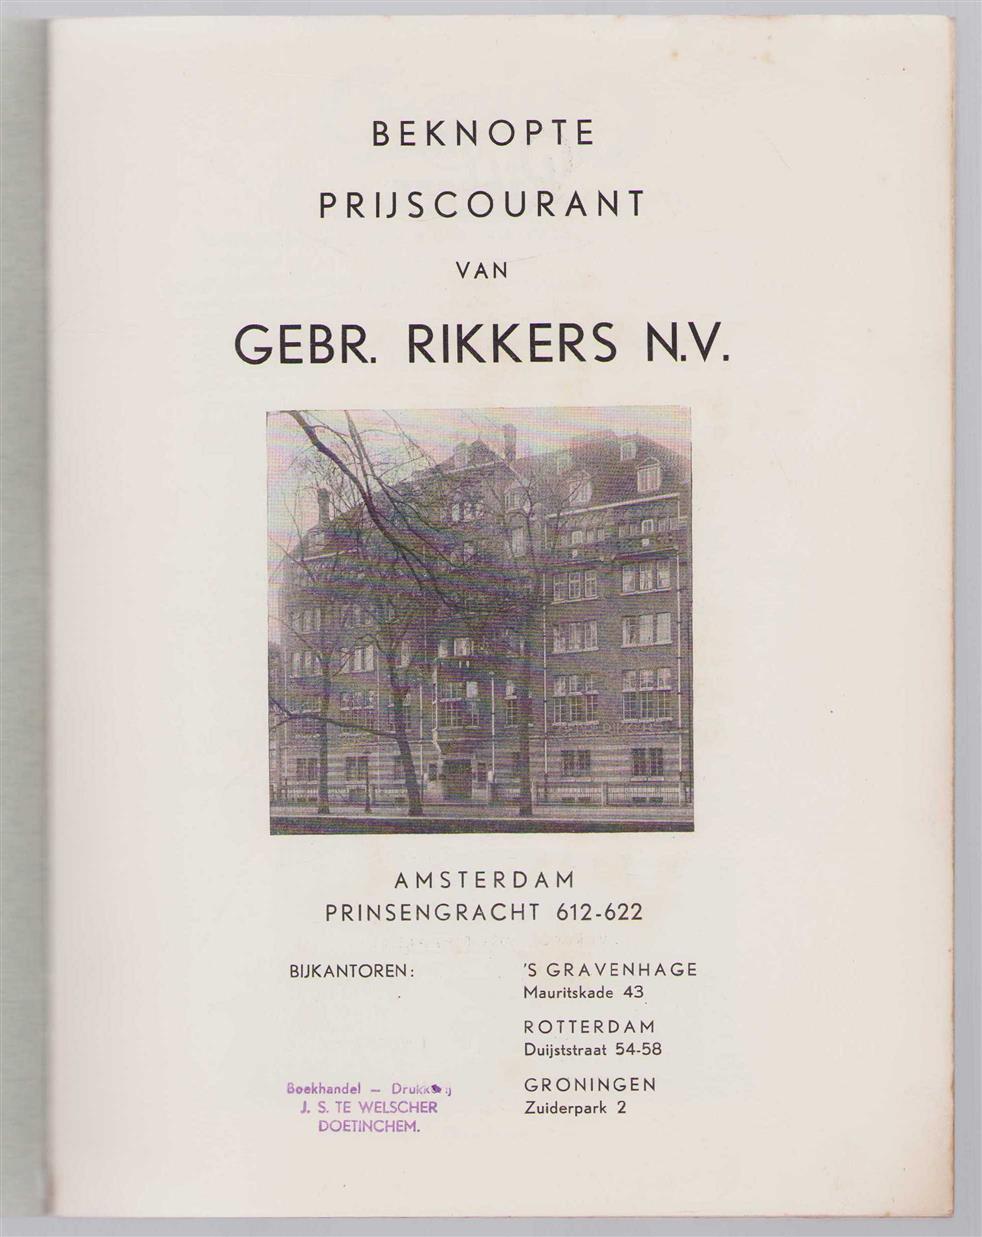 n.n - Beknopte prijscourant van Gebr. Rikkers N.V. Amsterdam Prinsengracht 612-622